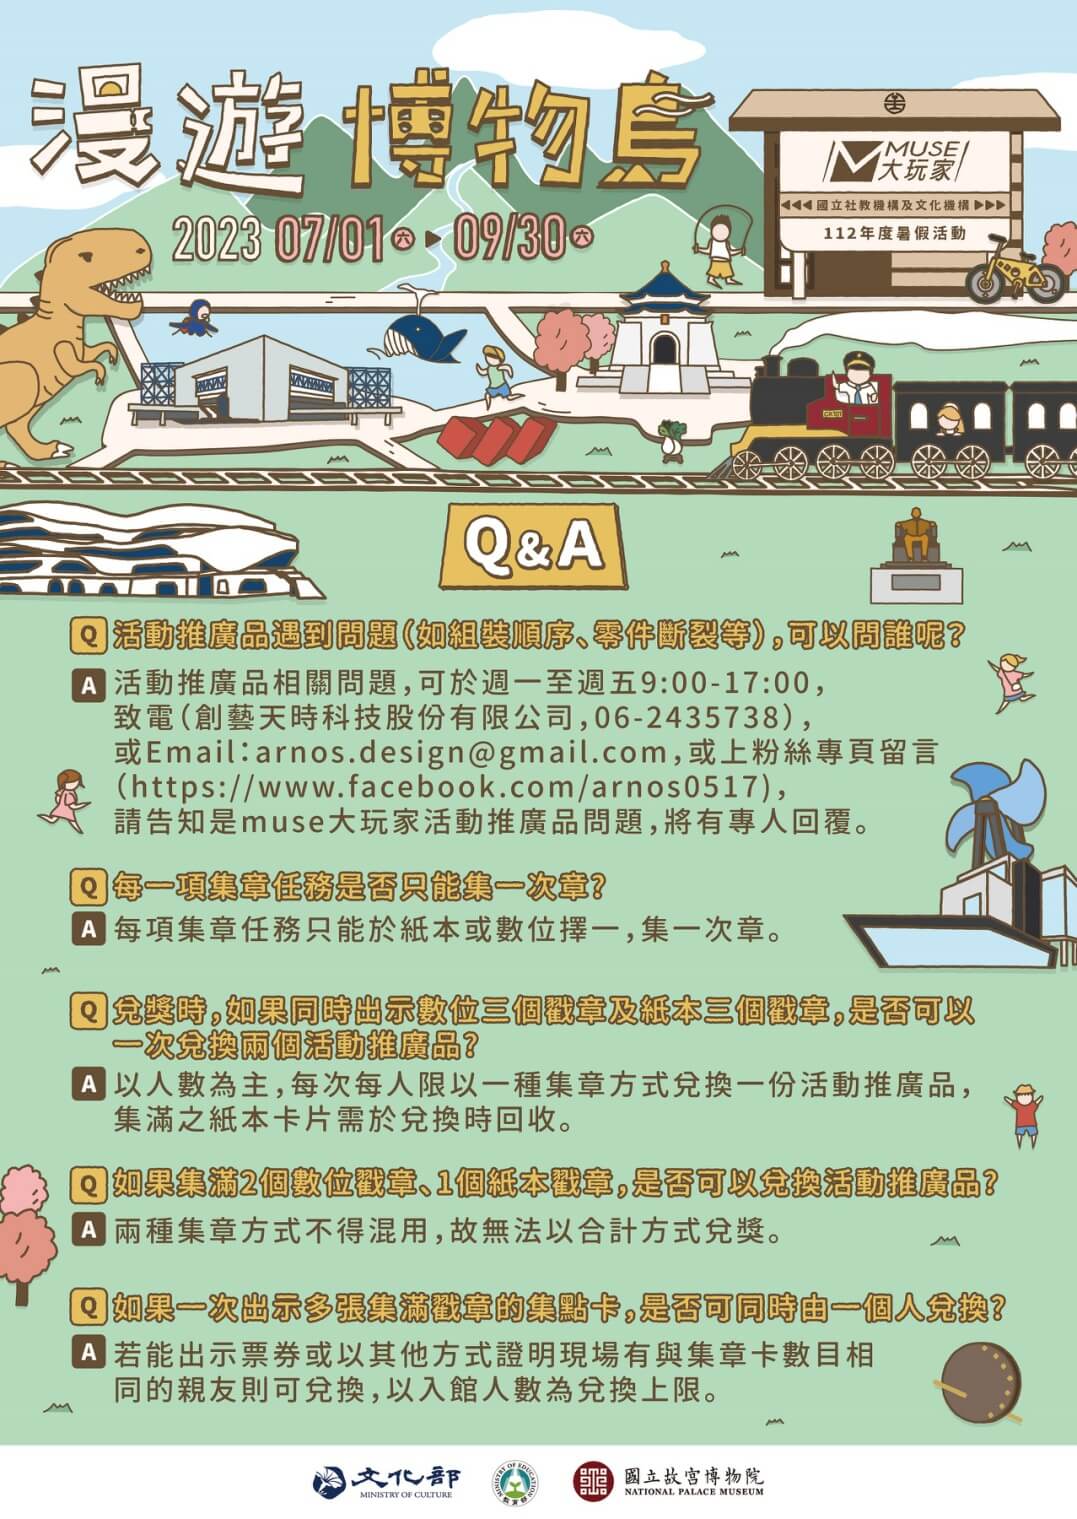 「MUSE大玩家-漫遊博物島」 國立社教機構及文化機構112年暑假聯合行銷